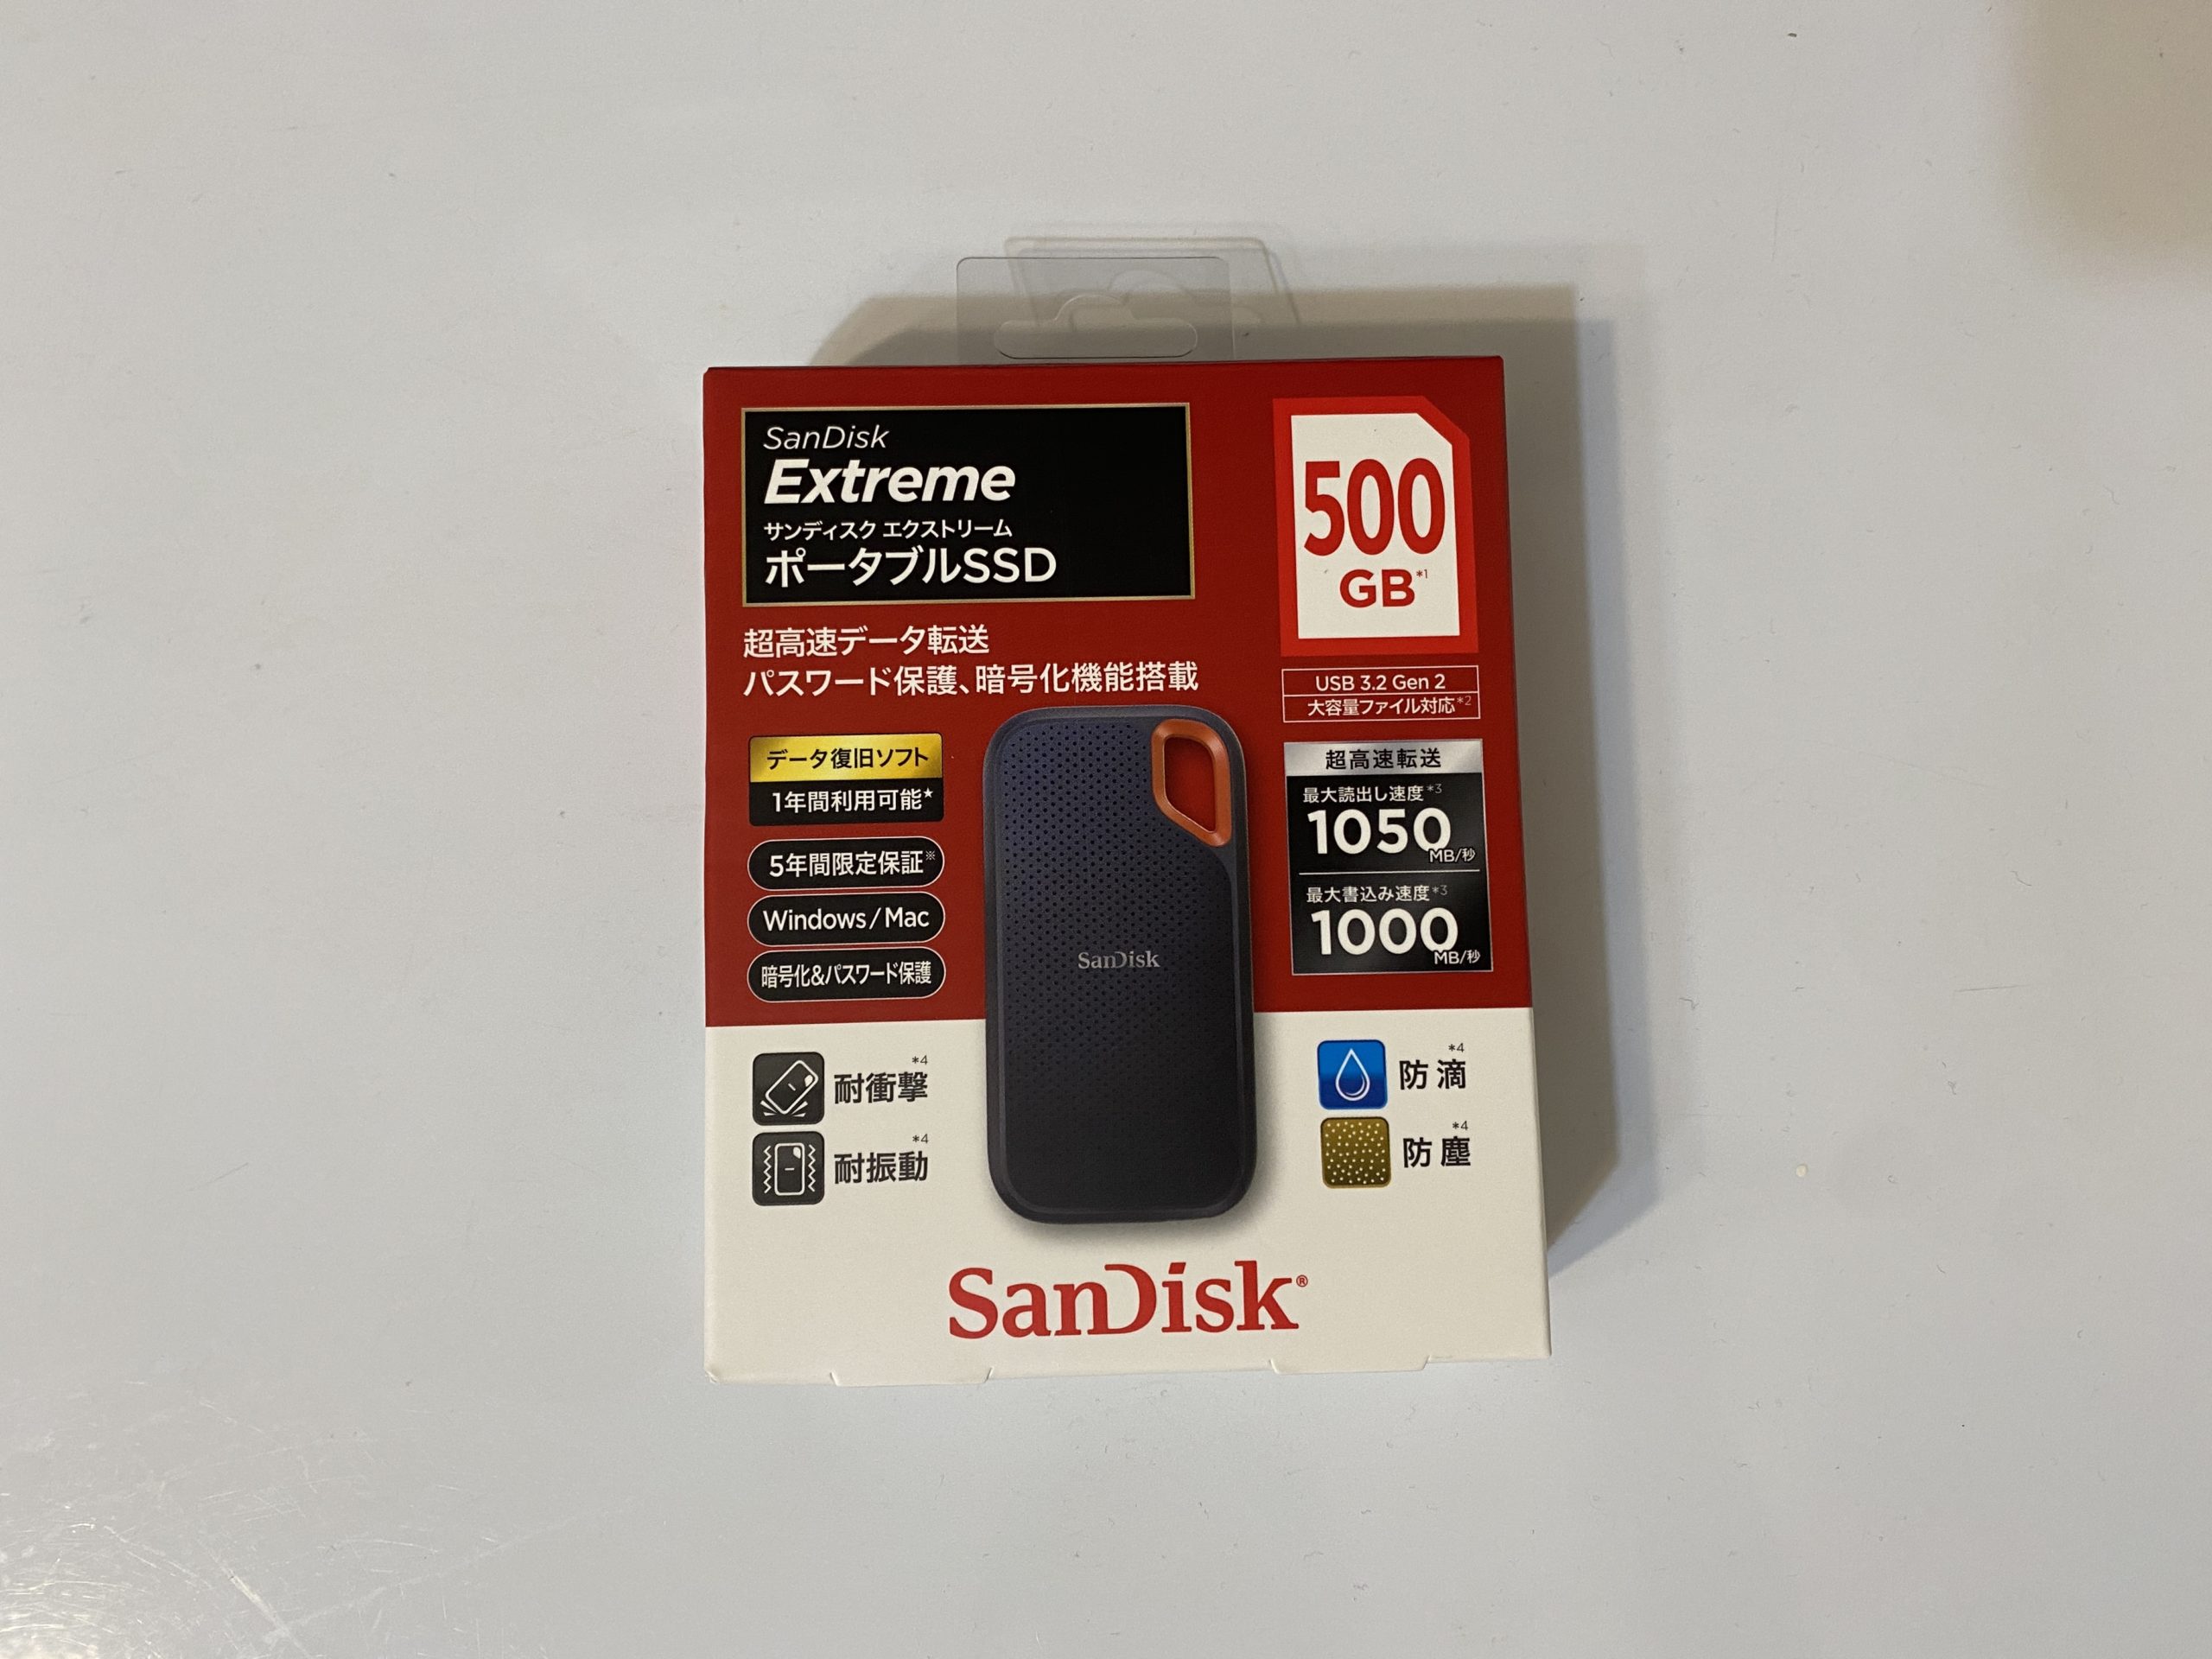 【体験】SanDisk Extreme ポータブルSSD 500GB【感想】軽い・早い・頑丈 | 食べ歩き日記in千葉